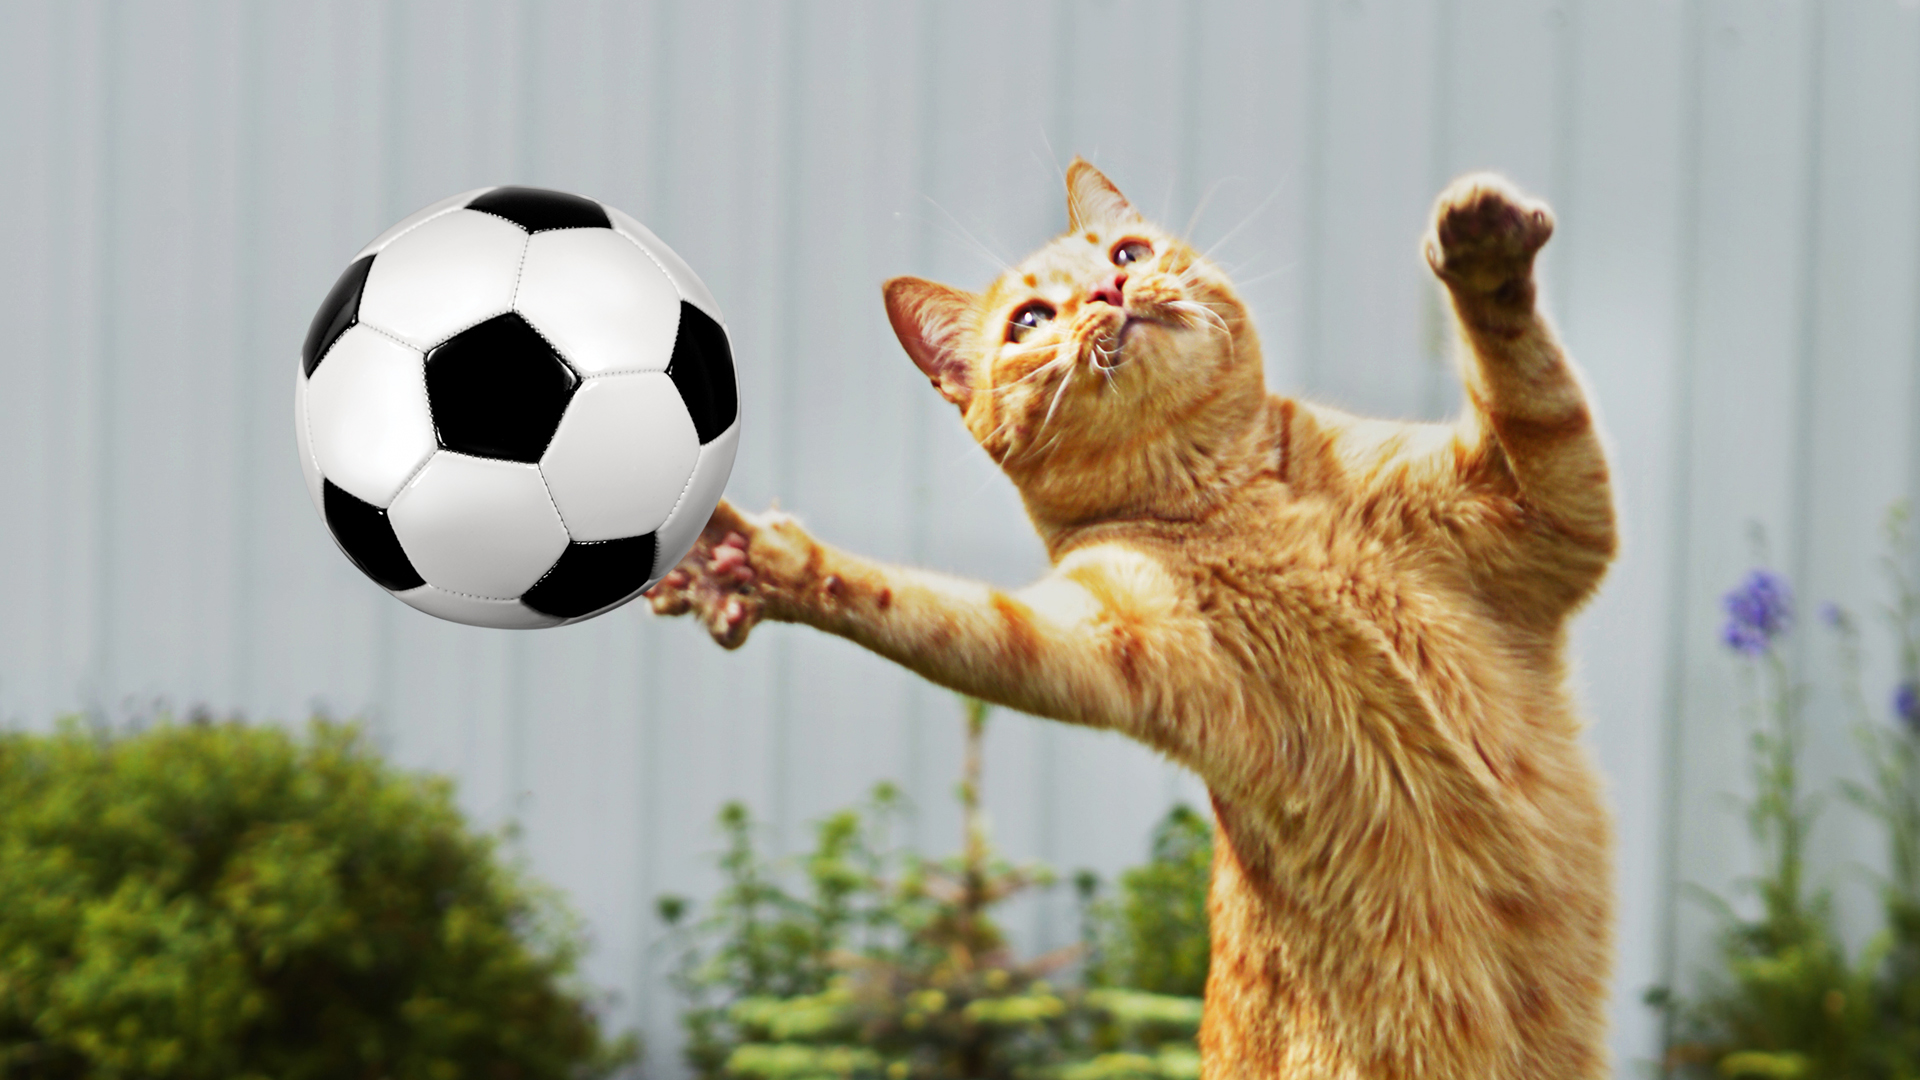 A cat in goal